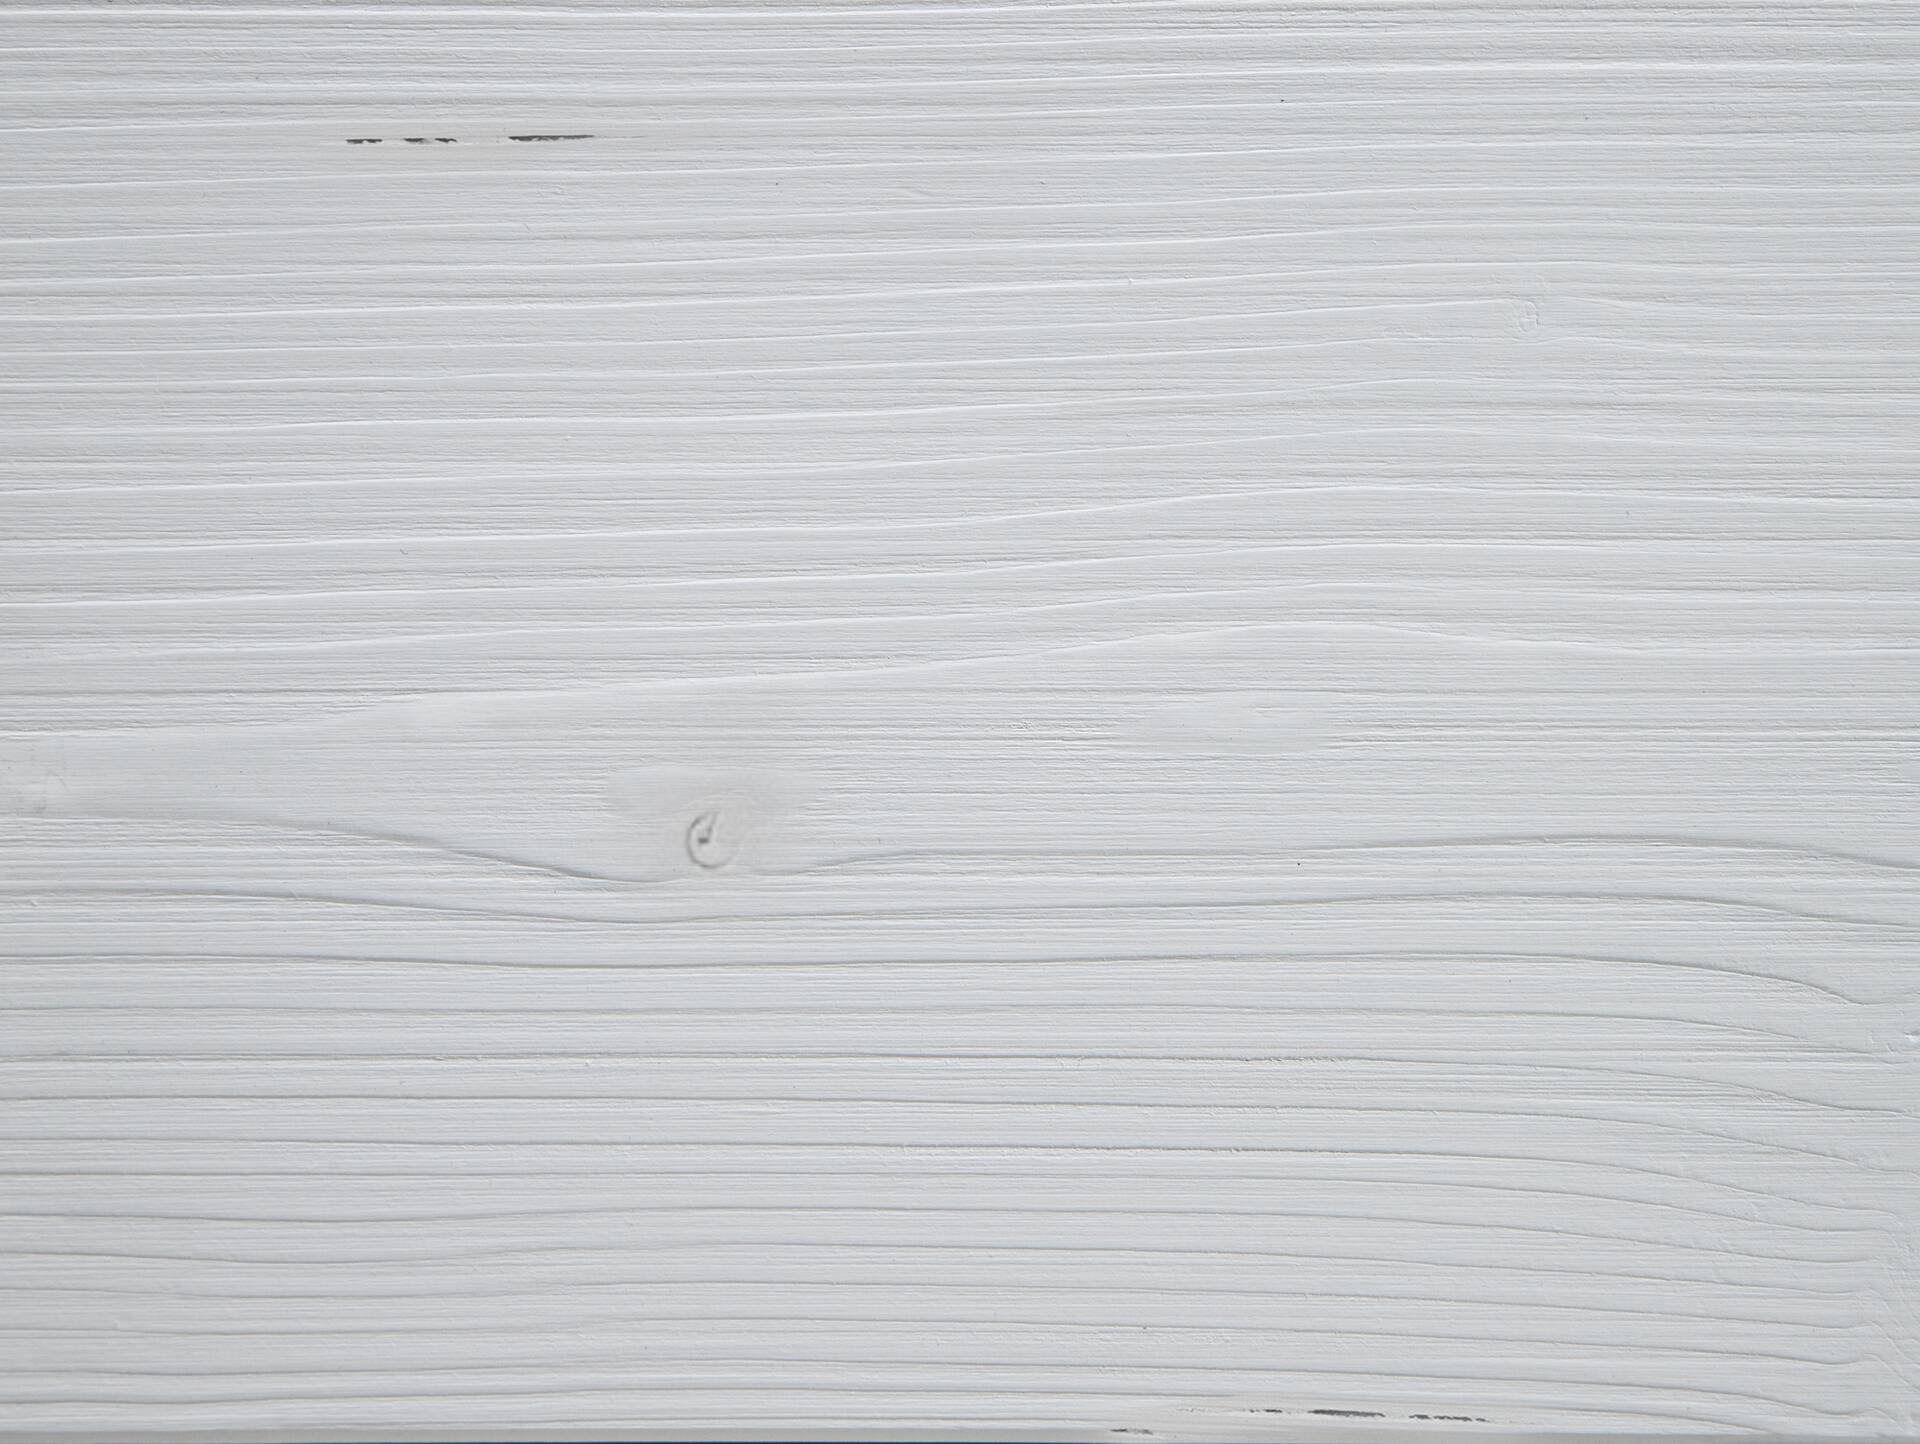 LUKY Kufenbett, Material Massivholz, Fichte massiv, Kufen weiß, mit/ohne Kopfteil 90 x 200 cm | weiss | ohne Kopfteil